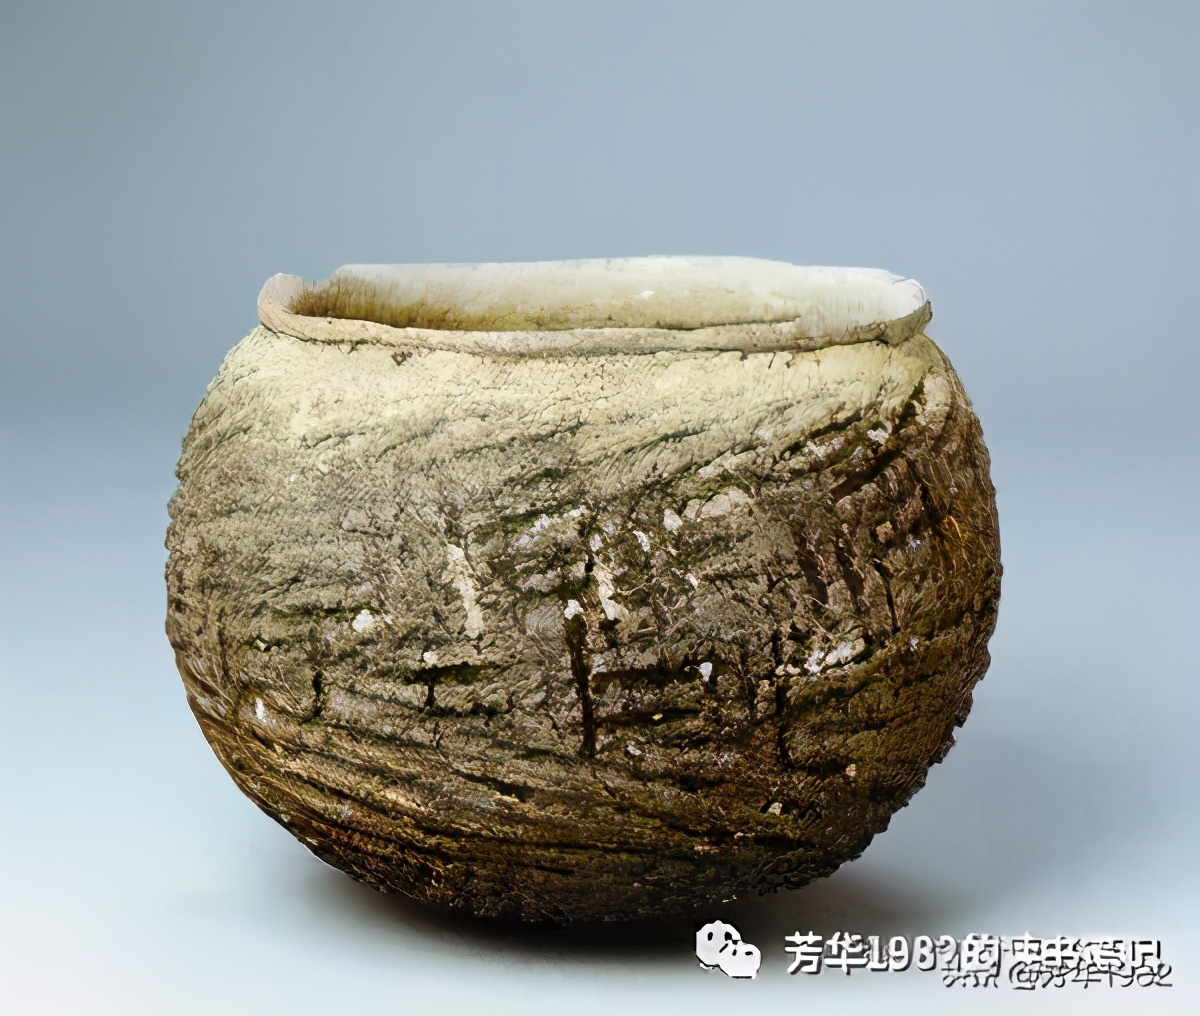 中国艺术品赏析之陶瓷